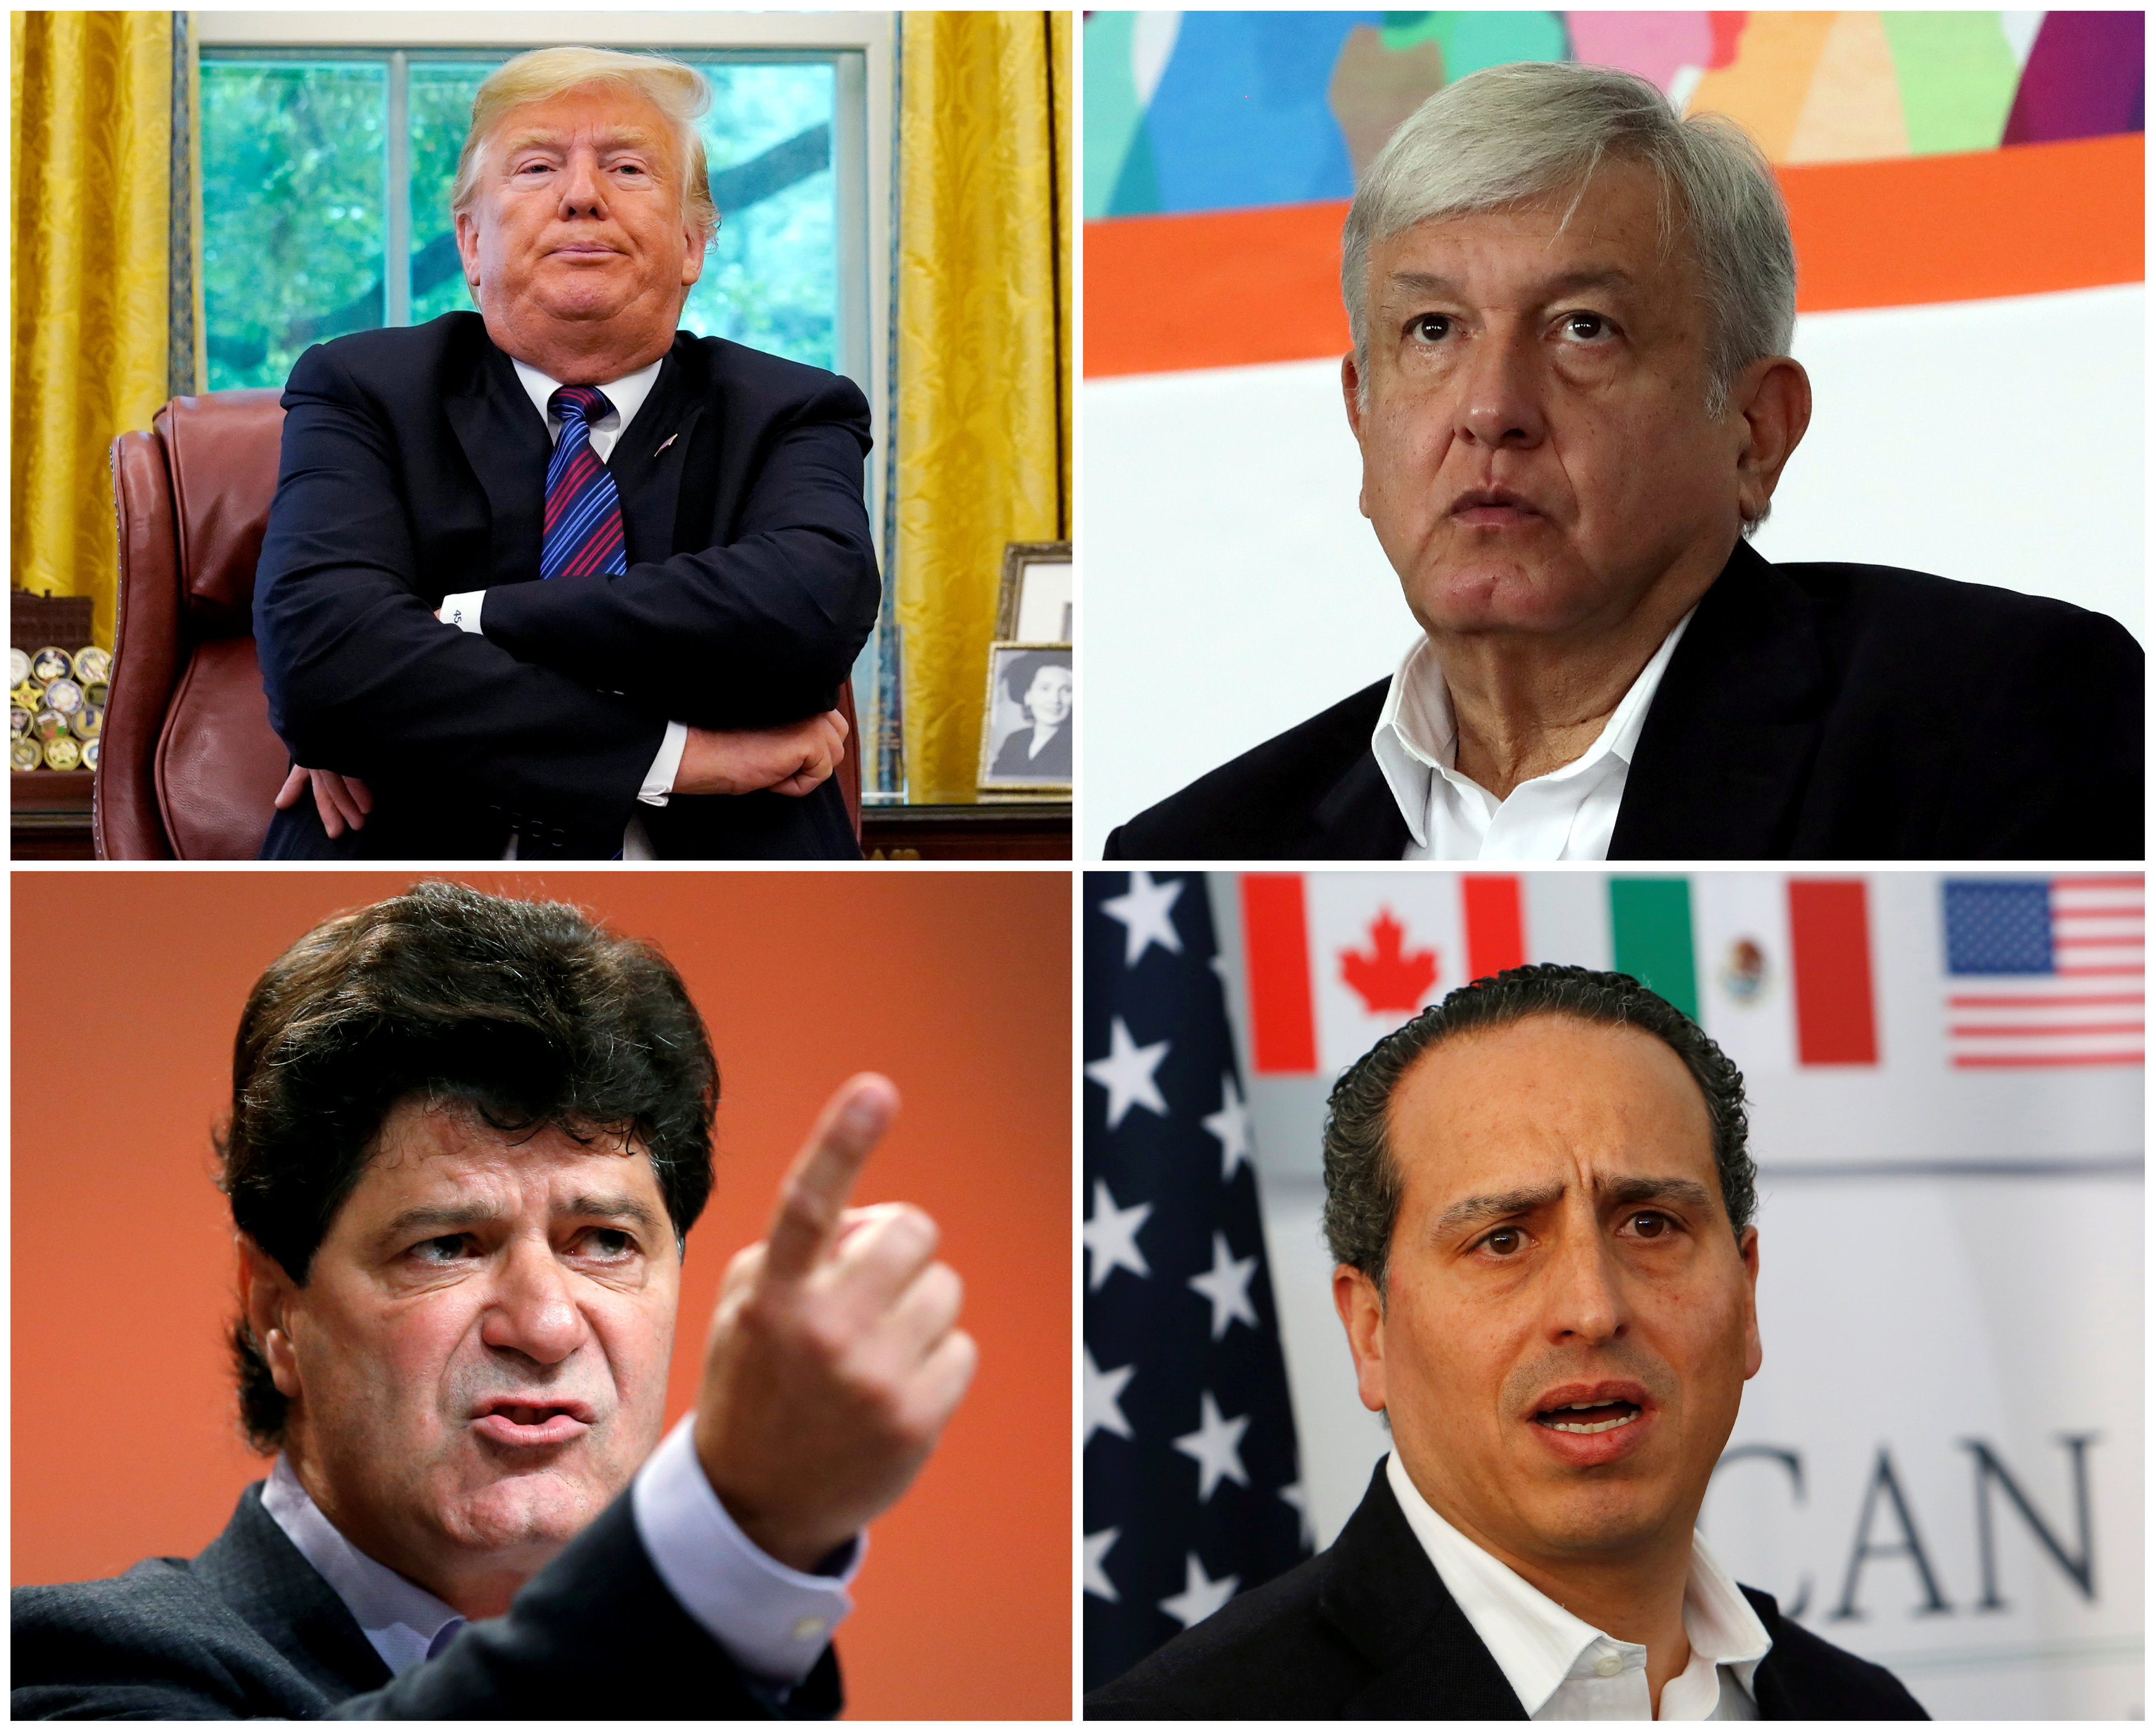 صورة مجمعة للرئيس الأمريكى ورئيس المكسيك ورئيس يونيفر جيري دياس